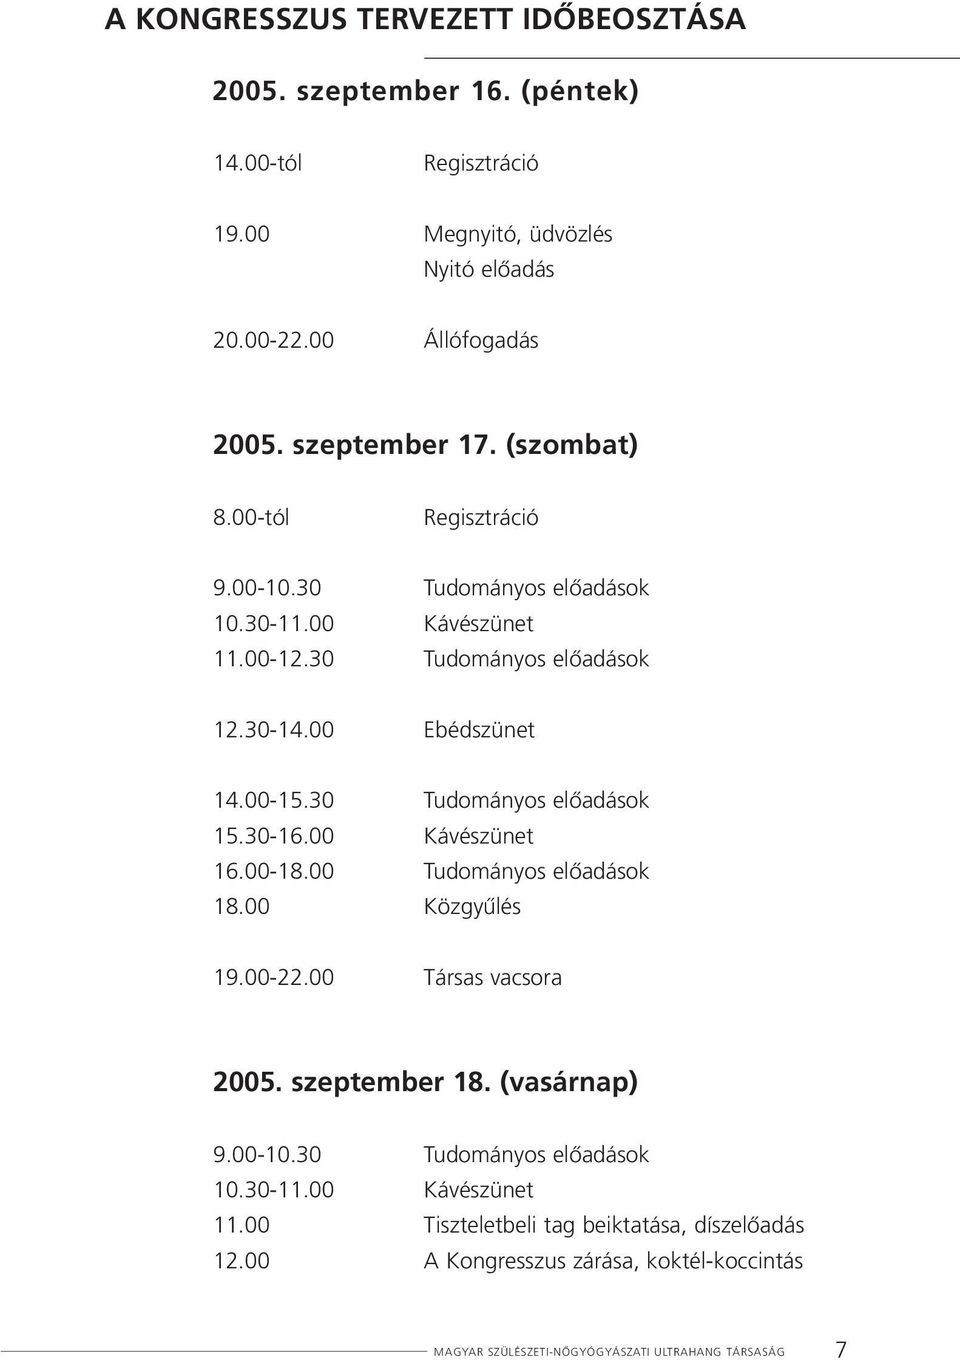 30 Tudományos elôadások 15.30-16.00 Kávészünet 16.00-18.00 Tudományos elôadások 18.00 Közgyûlés 19.00-22.00 Társas vacsora 2005. szeptember 18. (vasárnap) 9.00-10.